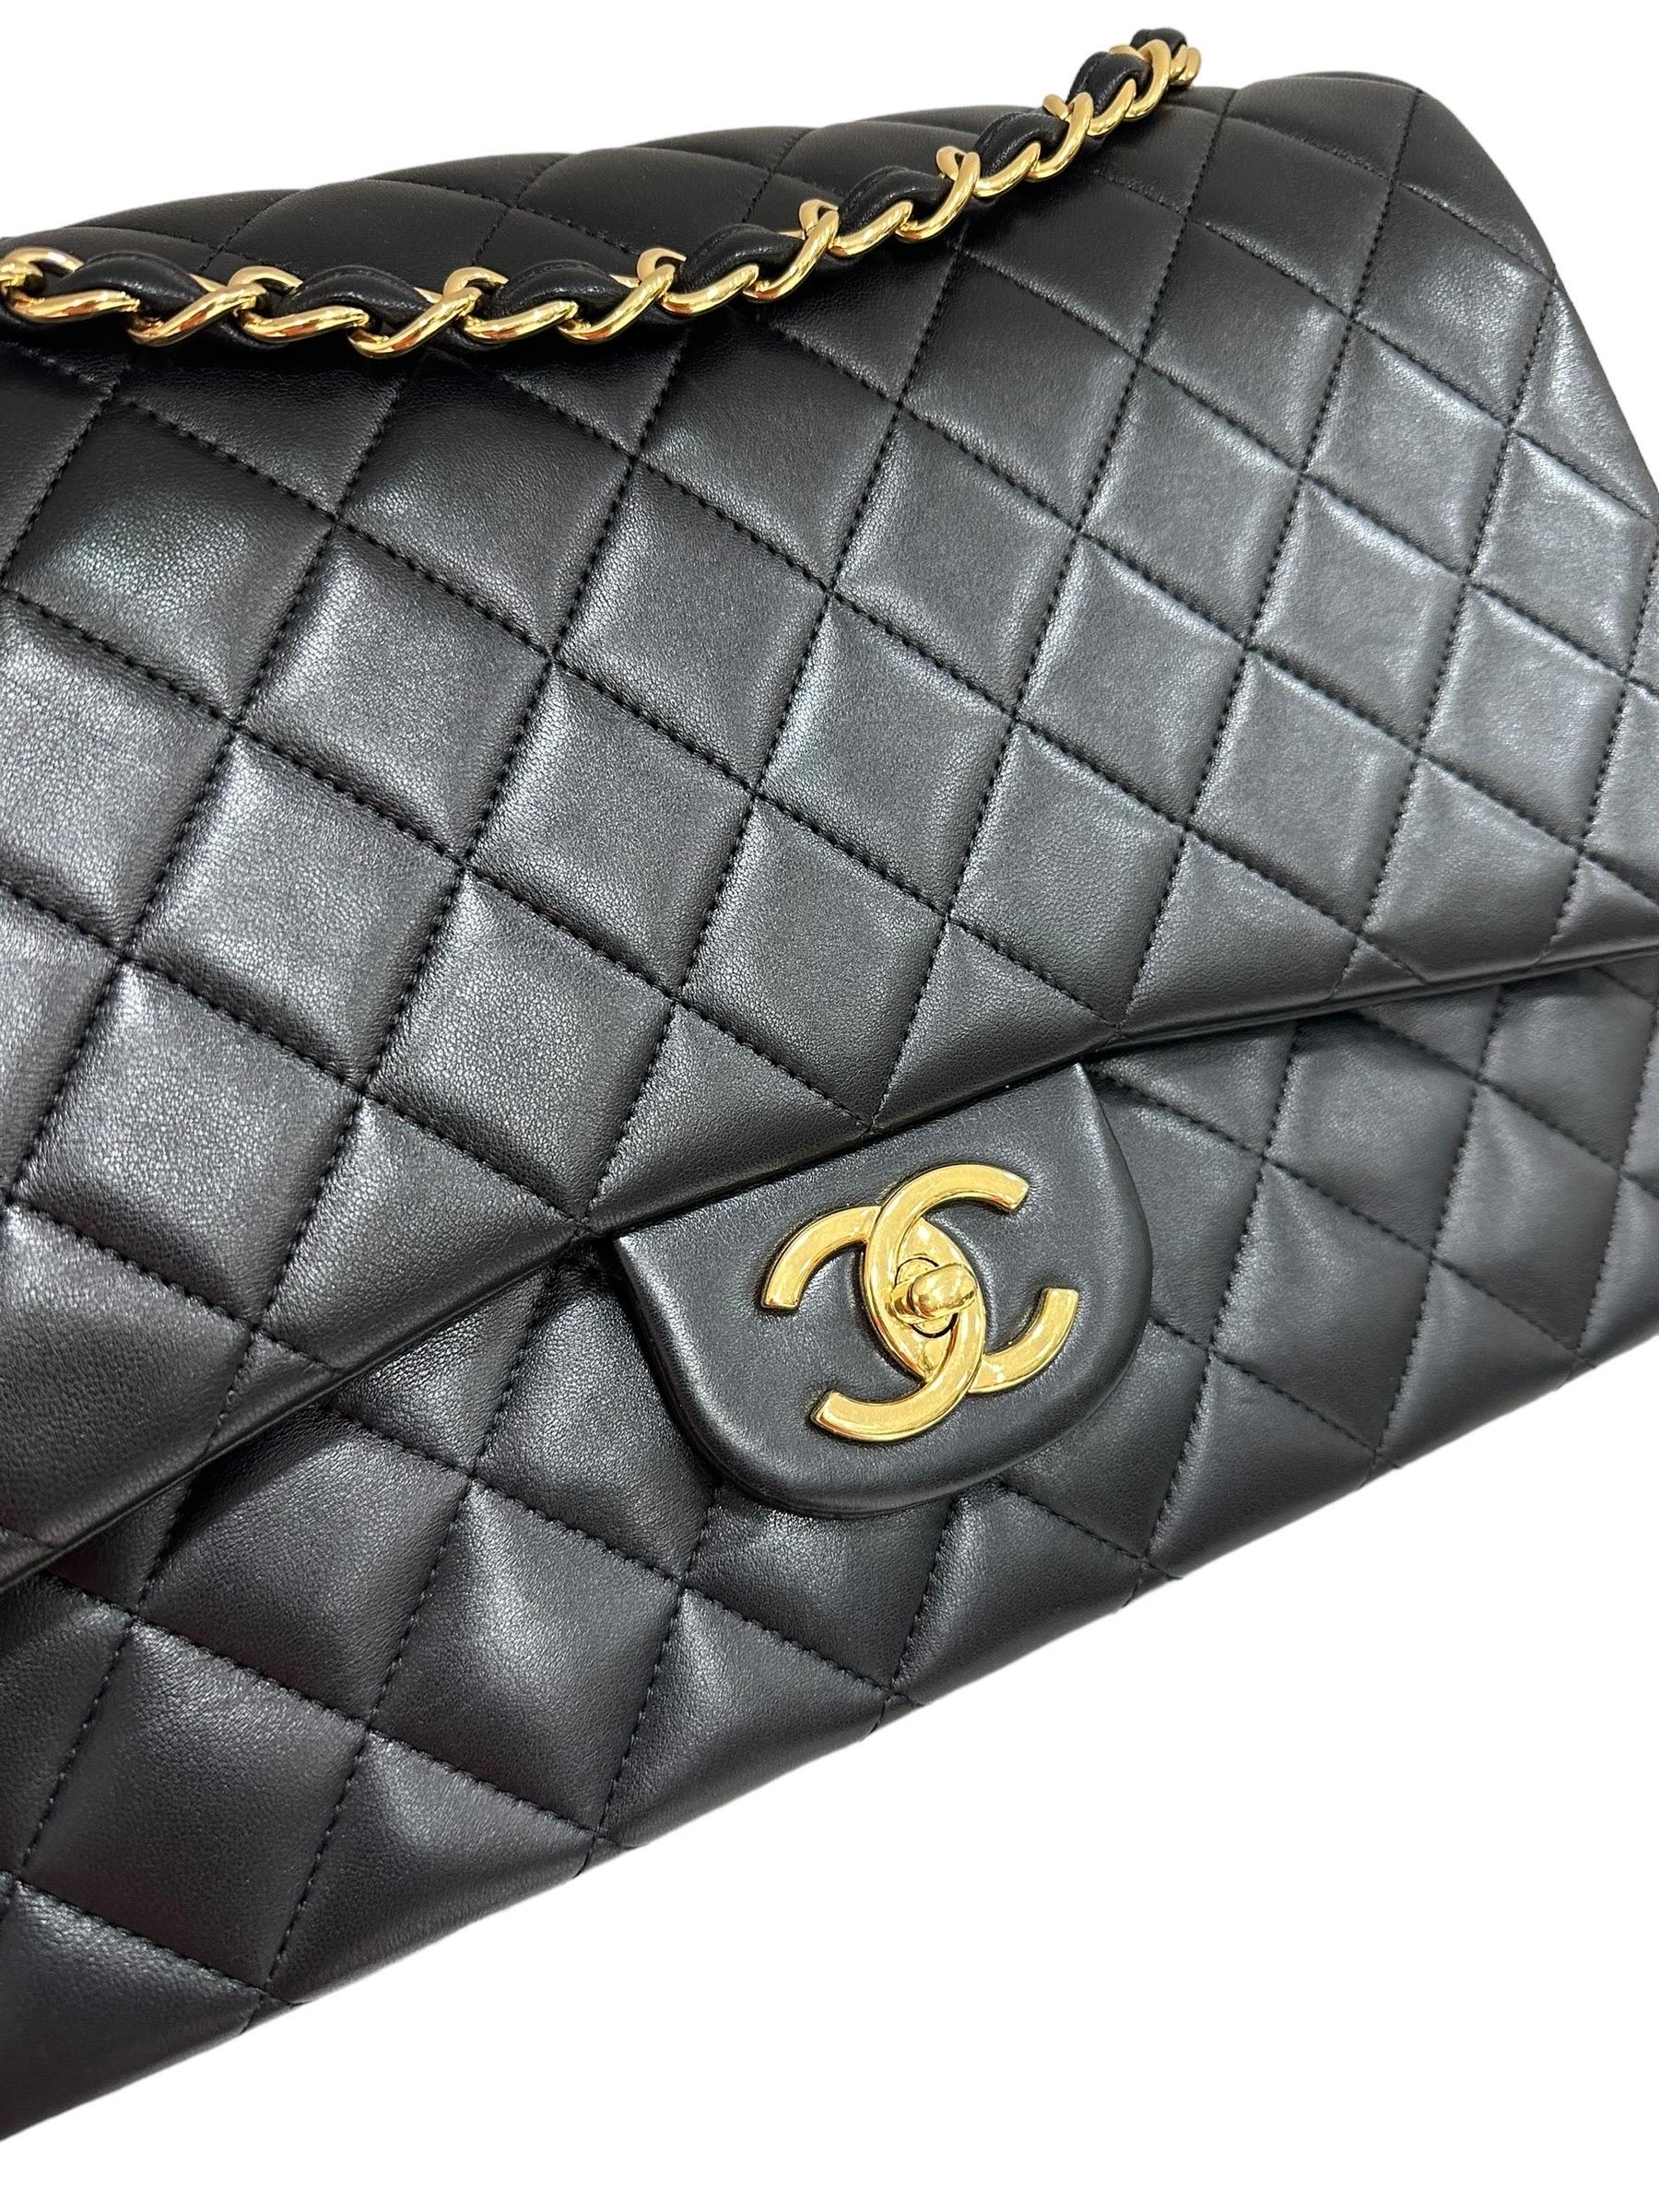 2019 Chanel Timeless Maxi Jumbo Pelle liscia Nera For Sale 1